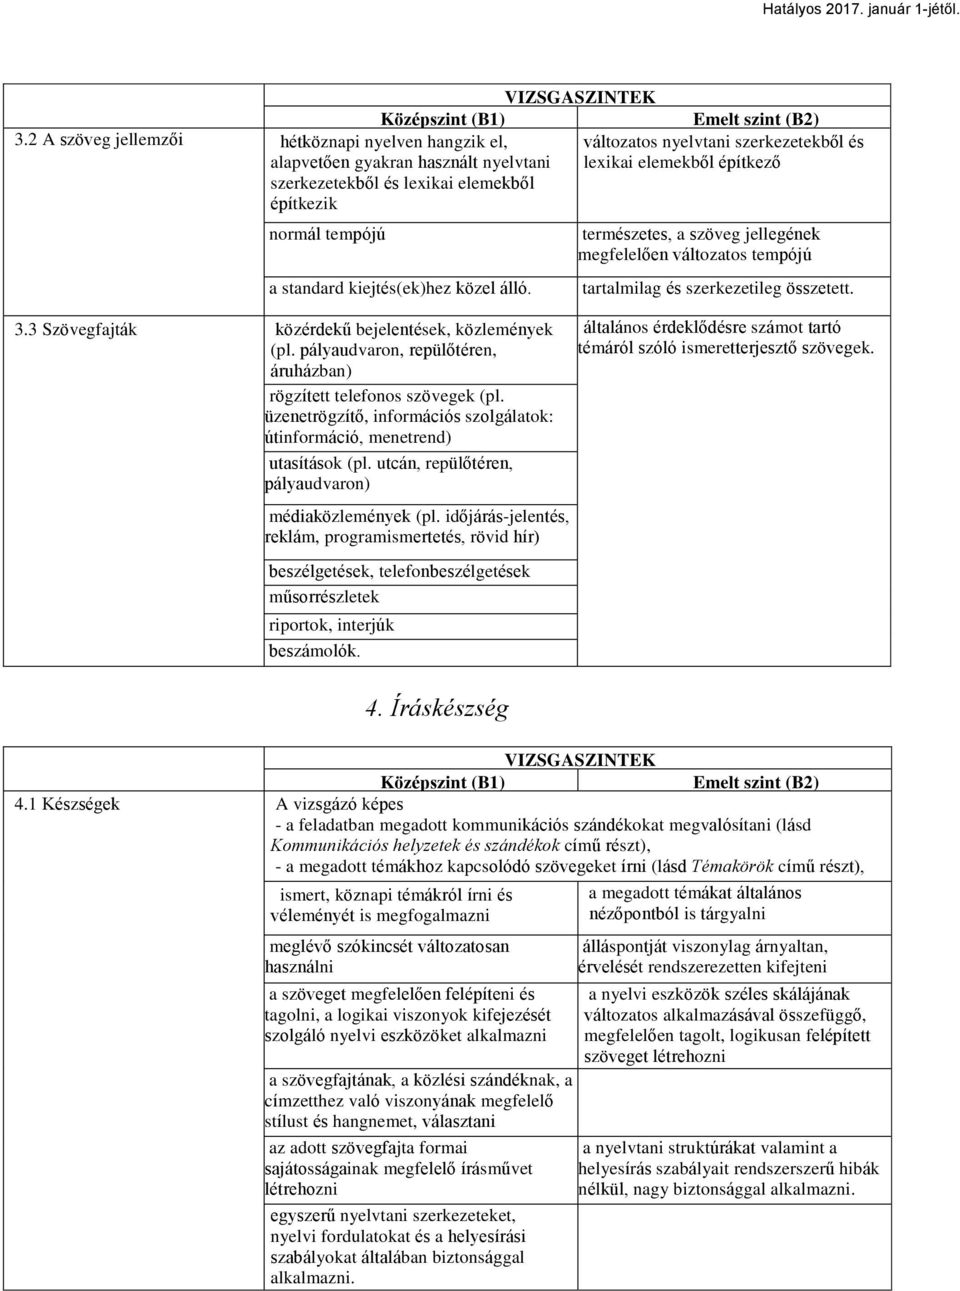 üzenetrögzítő, információs szolgálatok: útinformáció, menetrend) utasítások (pl. utcán, repülőtéren, pályaudvaron) médiaközlemények (pl.